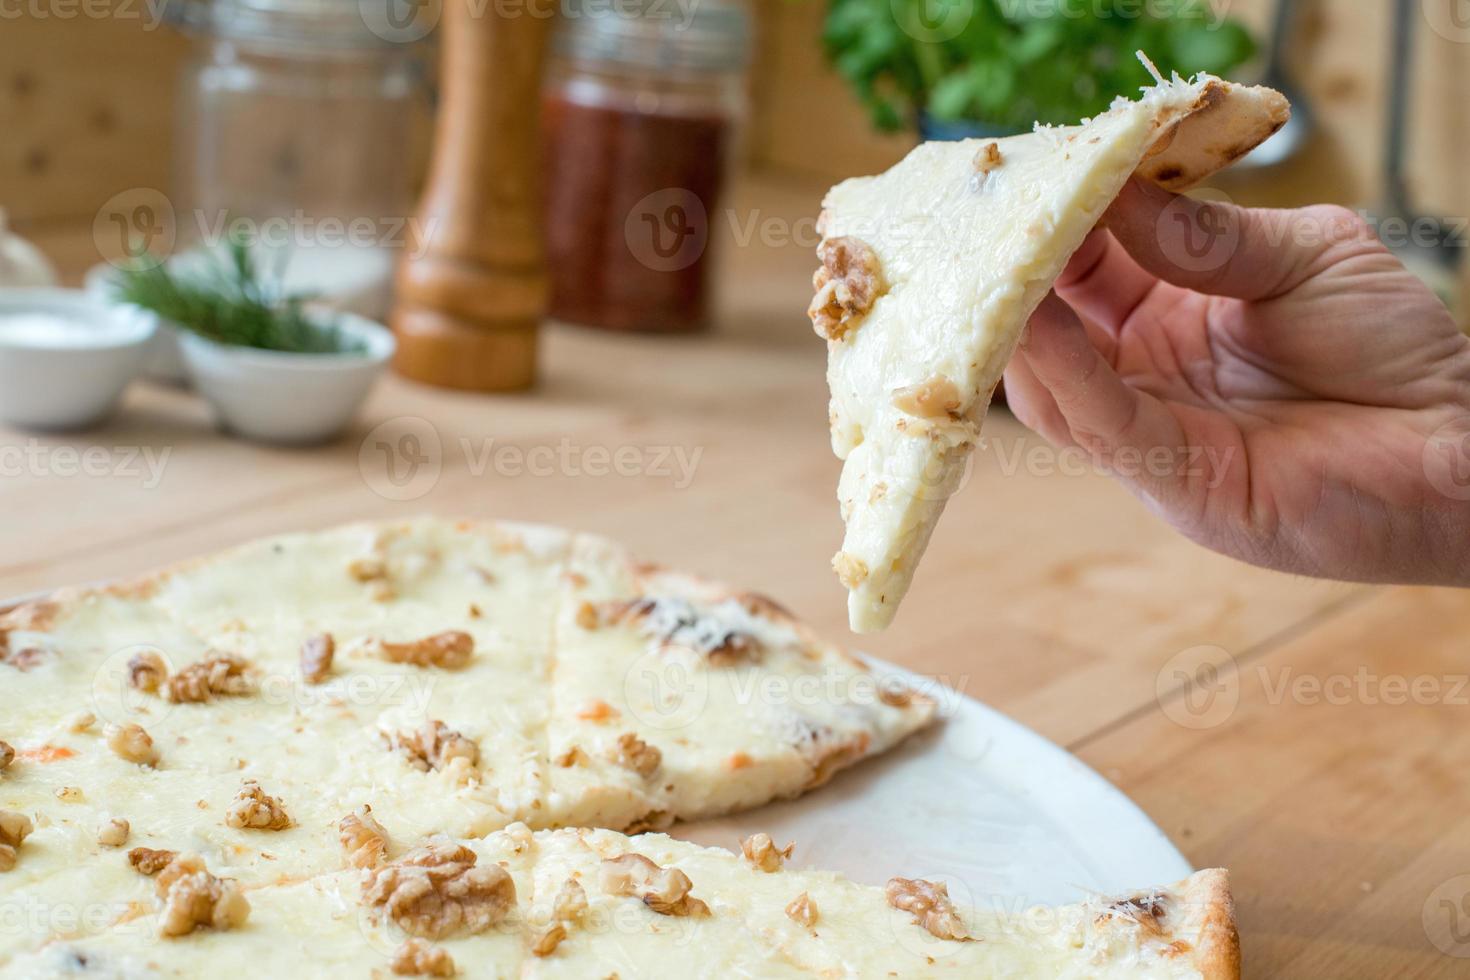 comendo uma fatia de pizza italiana de queijo gorgonzola e nozes foto